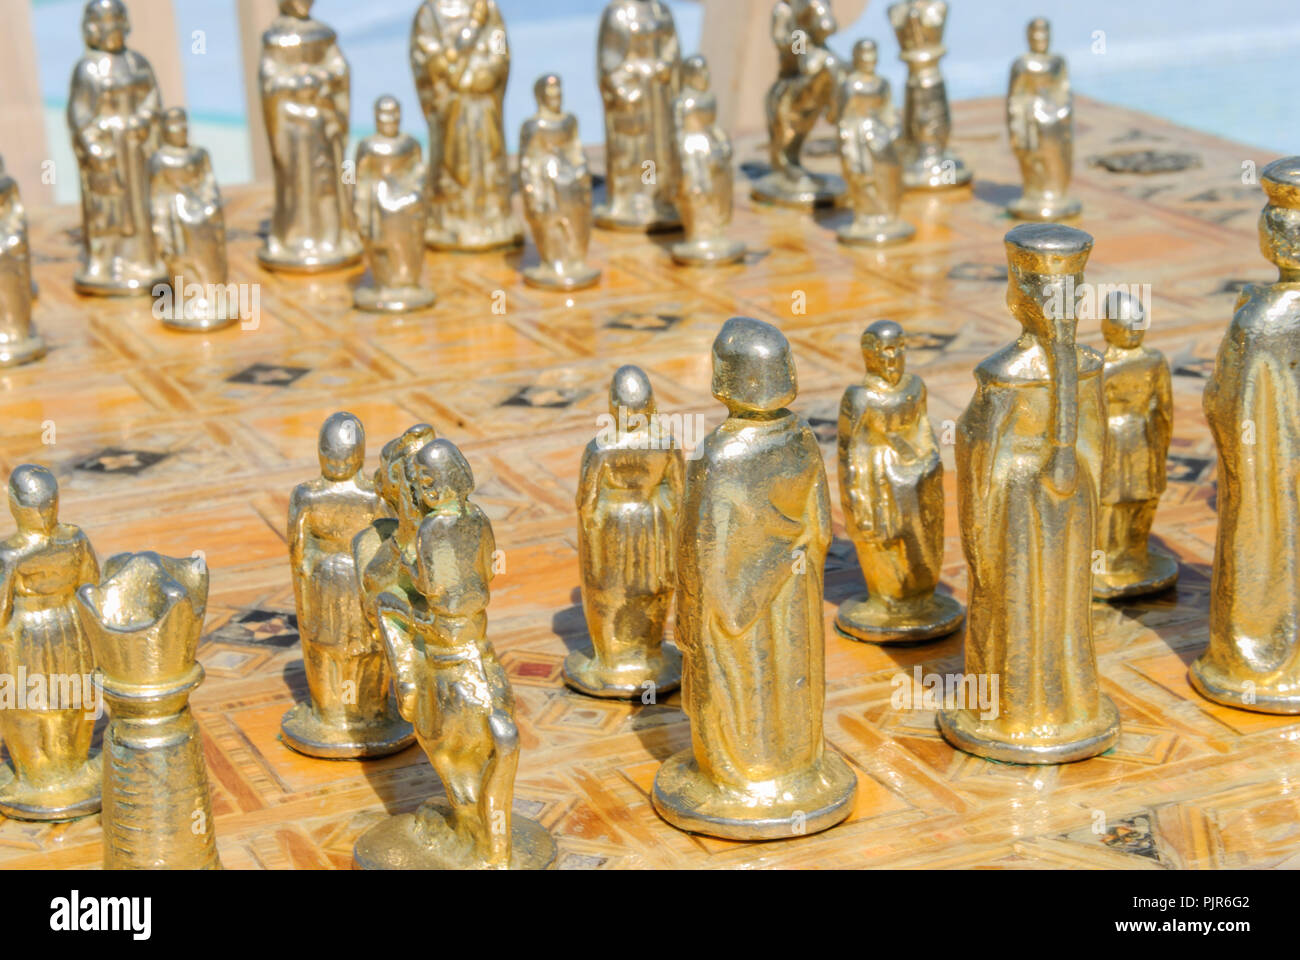 Oro e marmo set di scacchi da una piscina, Emirates Palace Hotel, Emirati Arabi Uniti, Emirati arabi uniti Foto Stock